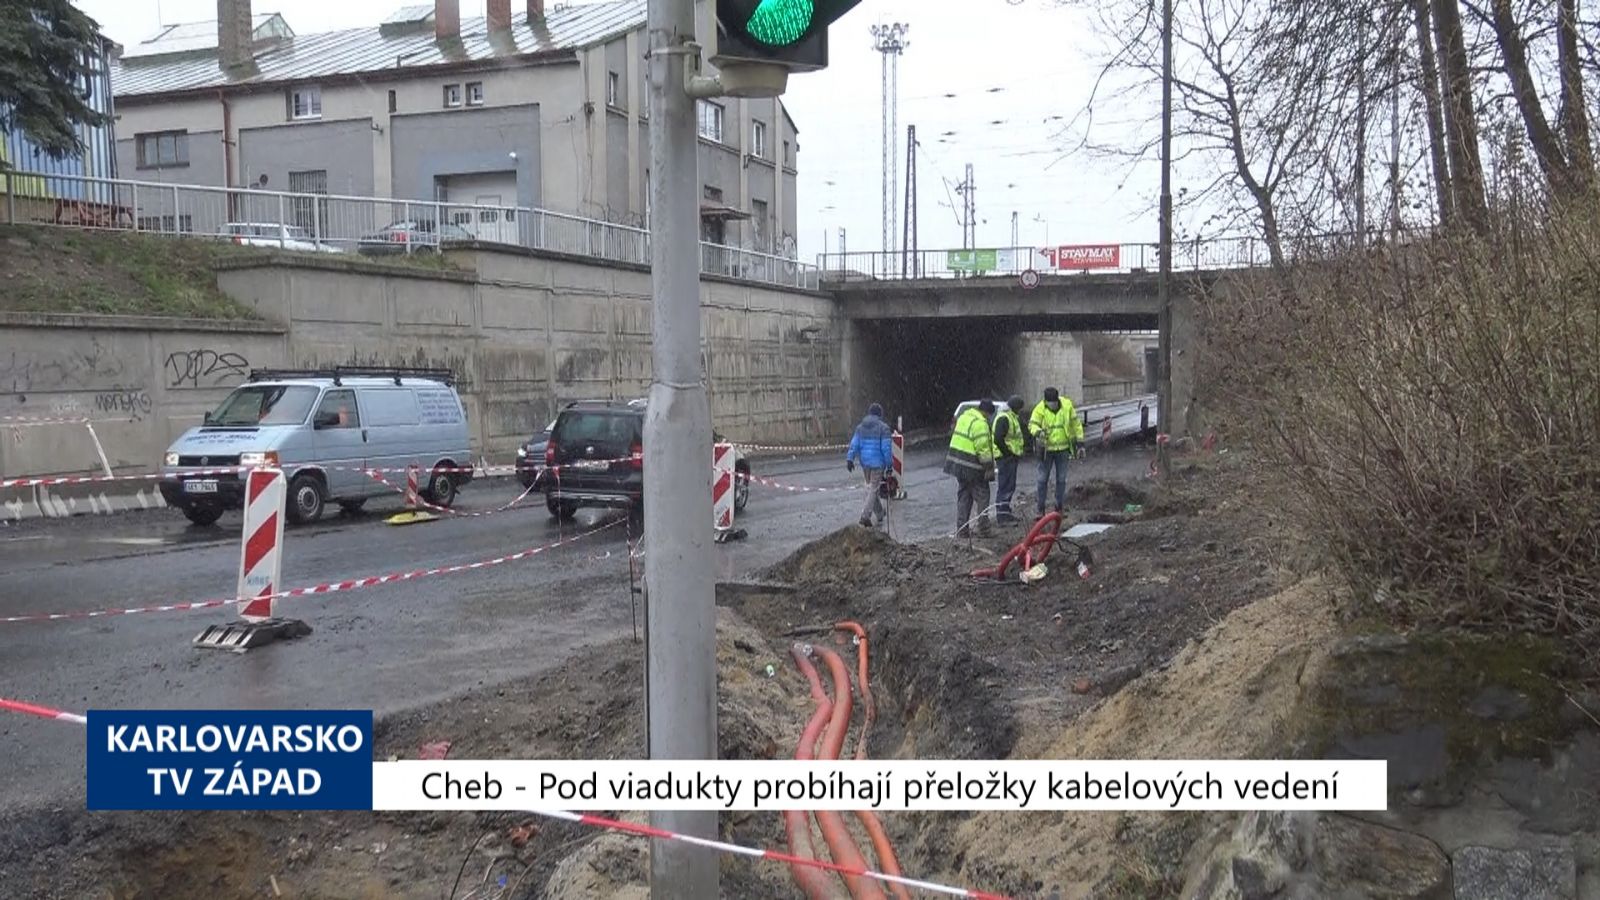 Cheb: Pod viadukty probíhají přeložky kabelových vedení (TV Západ)